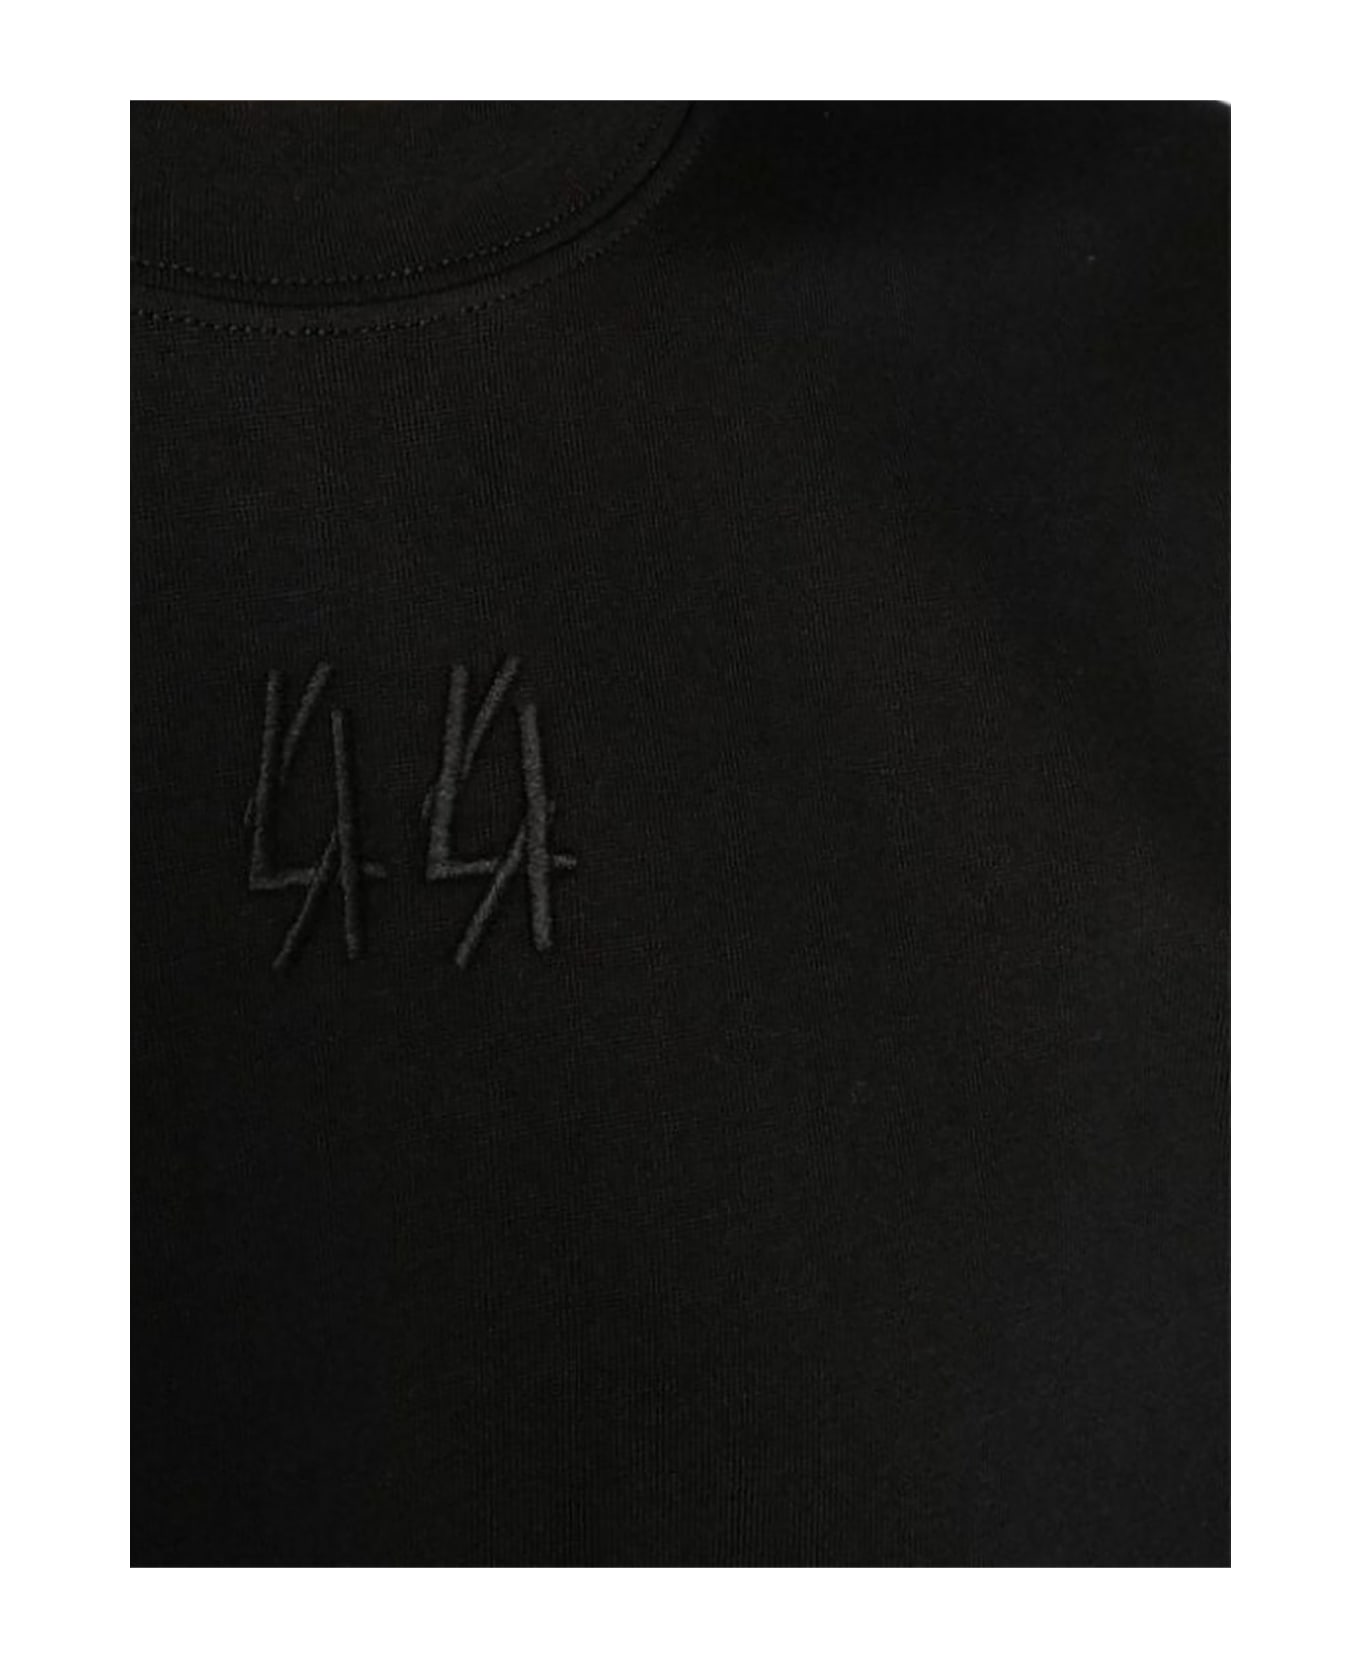 44 Label Group Black Cotton T-shirt シャツ